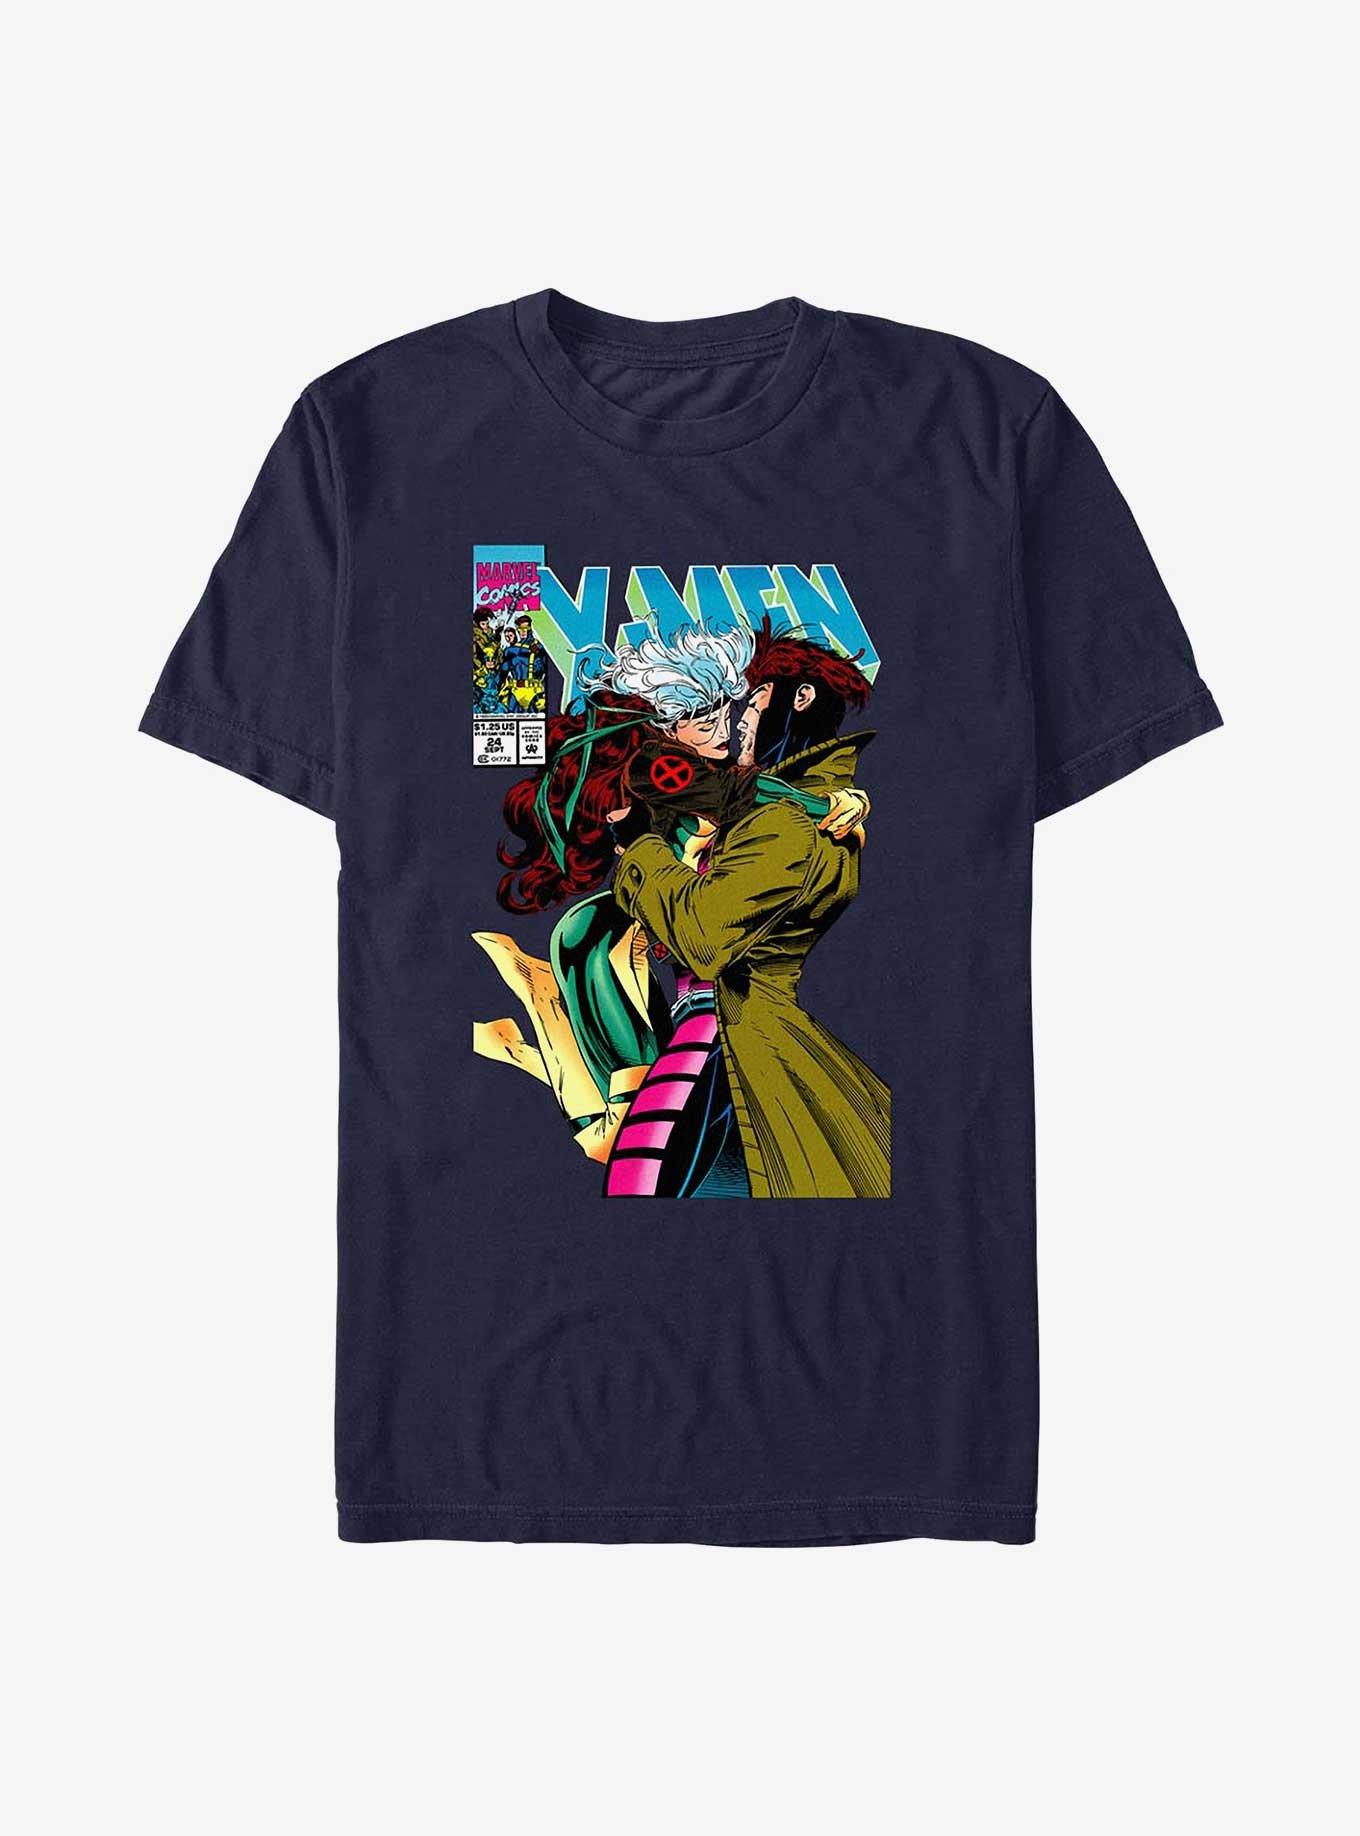 X-Men Rogue & Gambit 4Eva T-Shirt, NAVY, hi-res